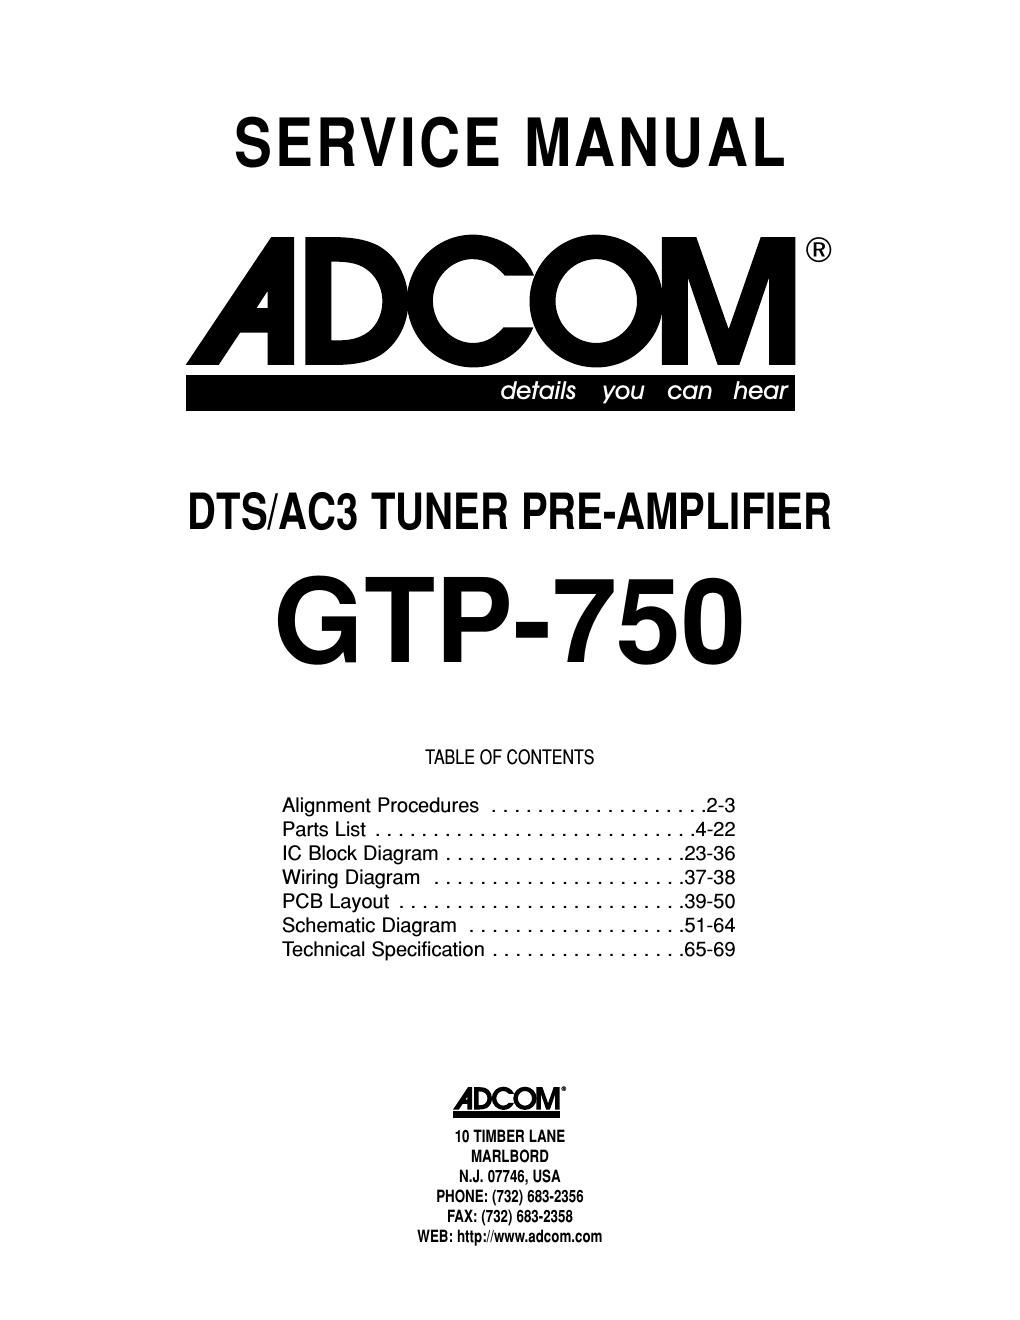 adcom gtp 750 service manual